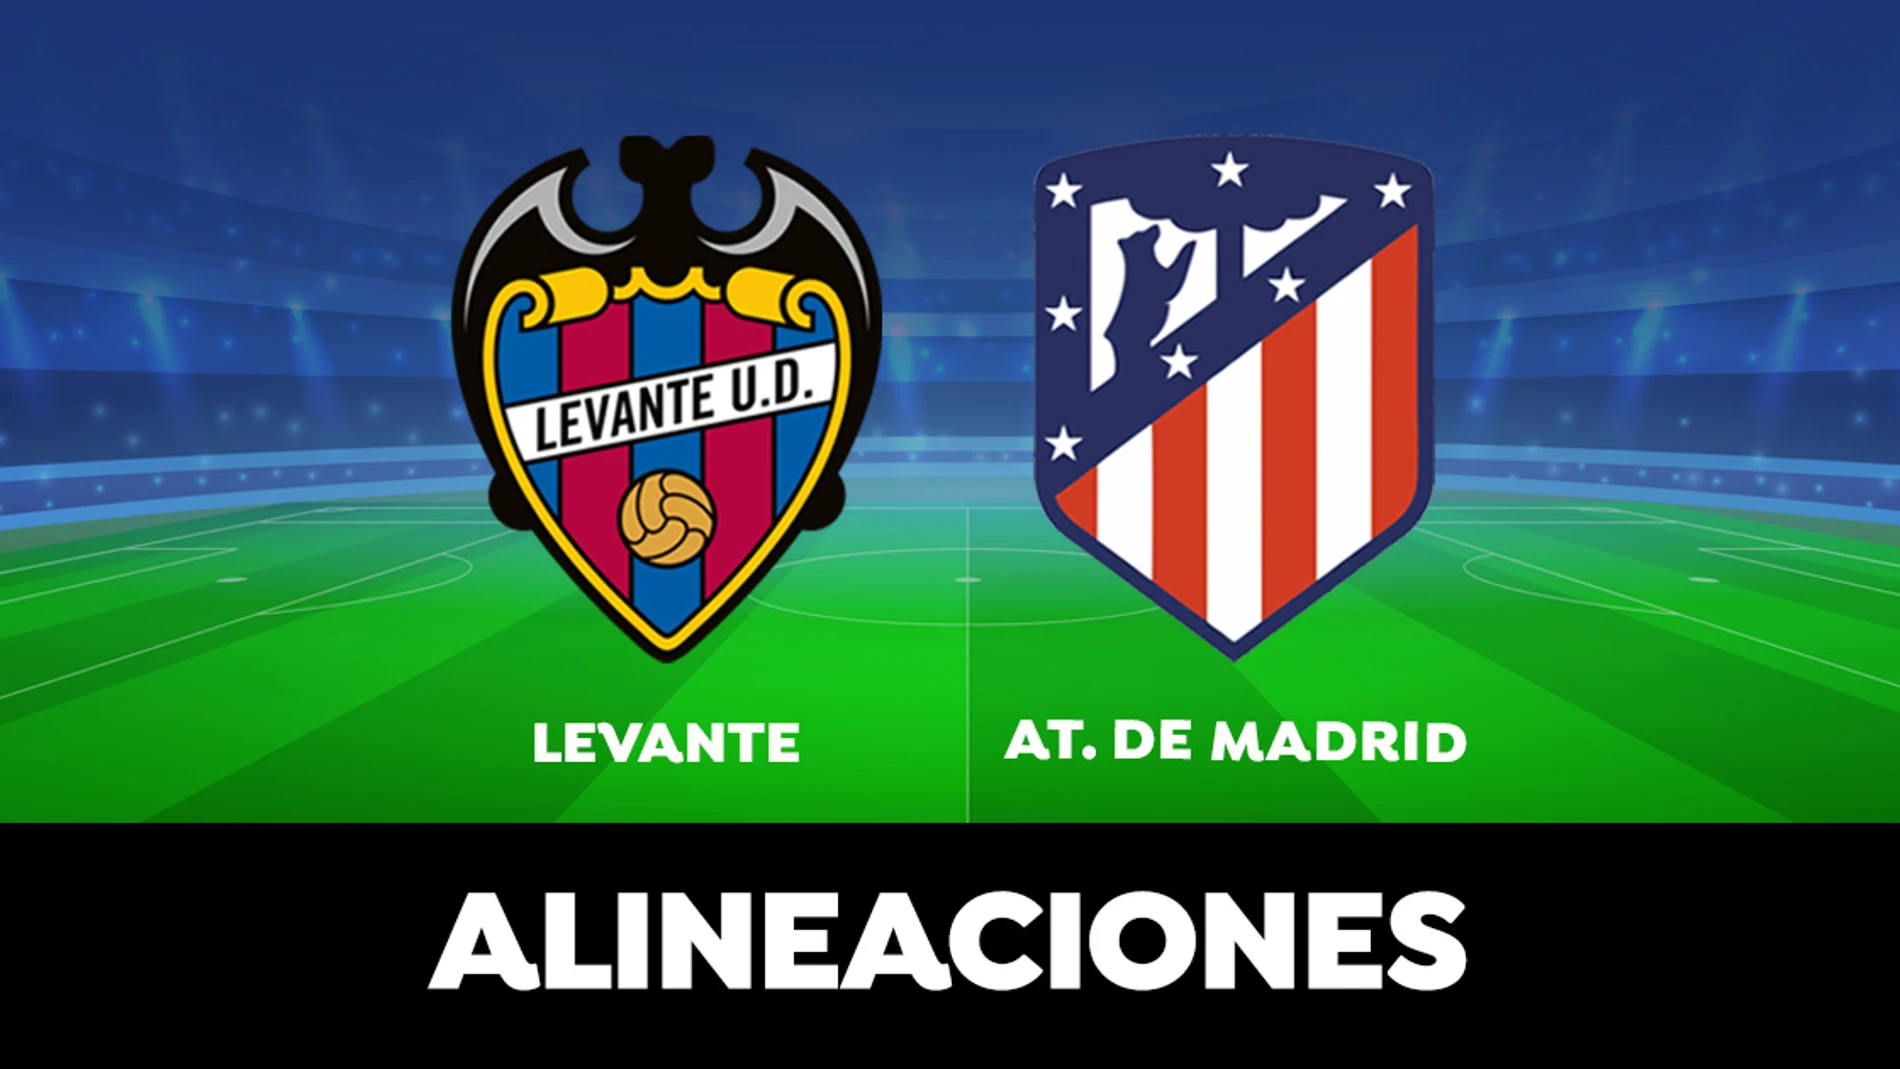 Alineación del Atlético de Madrid en el partido de hoy frente al Levante